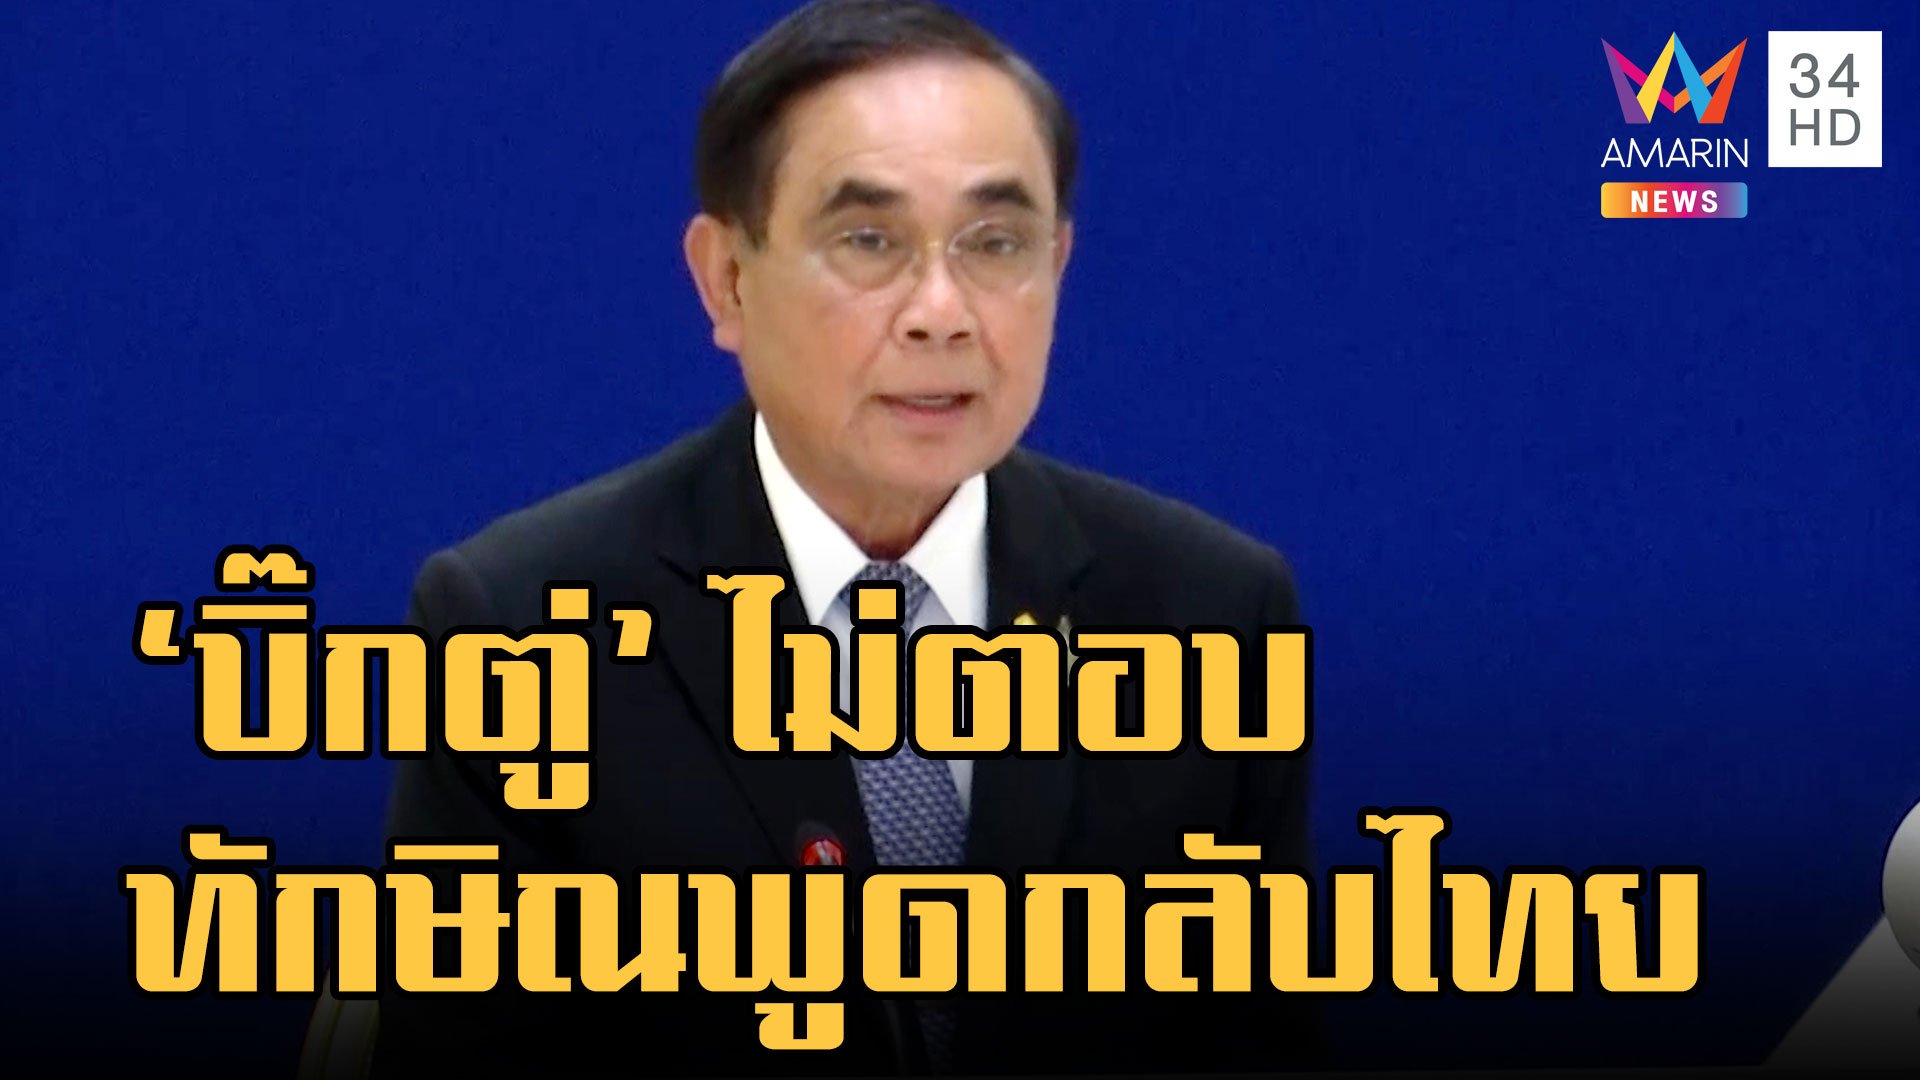 "บิ๊กตู่" งดให้สัมภาษณ์ เลี่ยงตอบ "ทักษิณ" พูดกลับไทย  | ข่าวเที่ยงอมรินทร์ | 26 ม.ค. 66 | AMARIN TVHD34